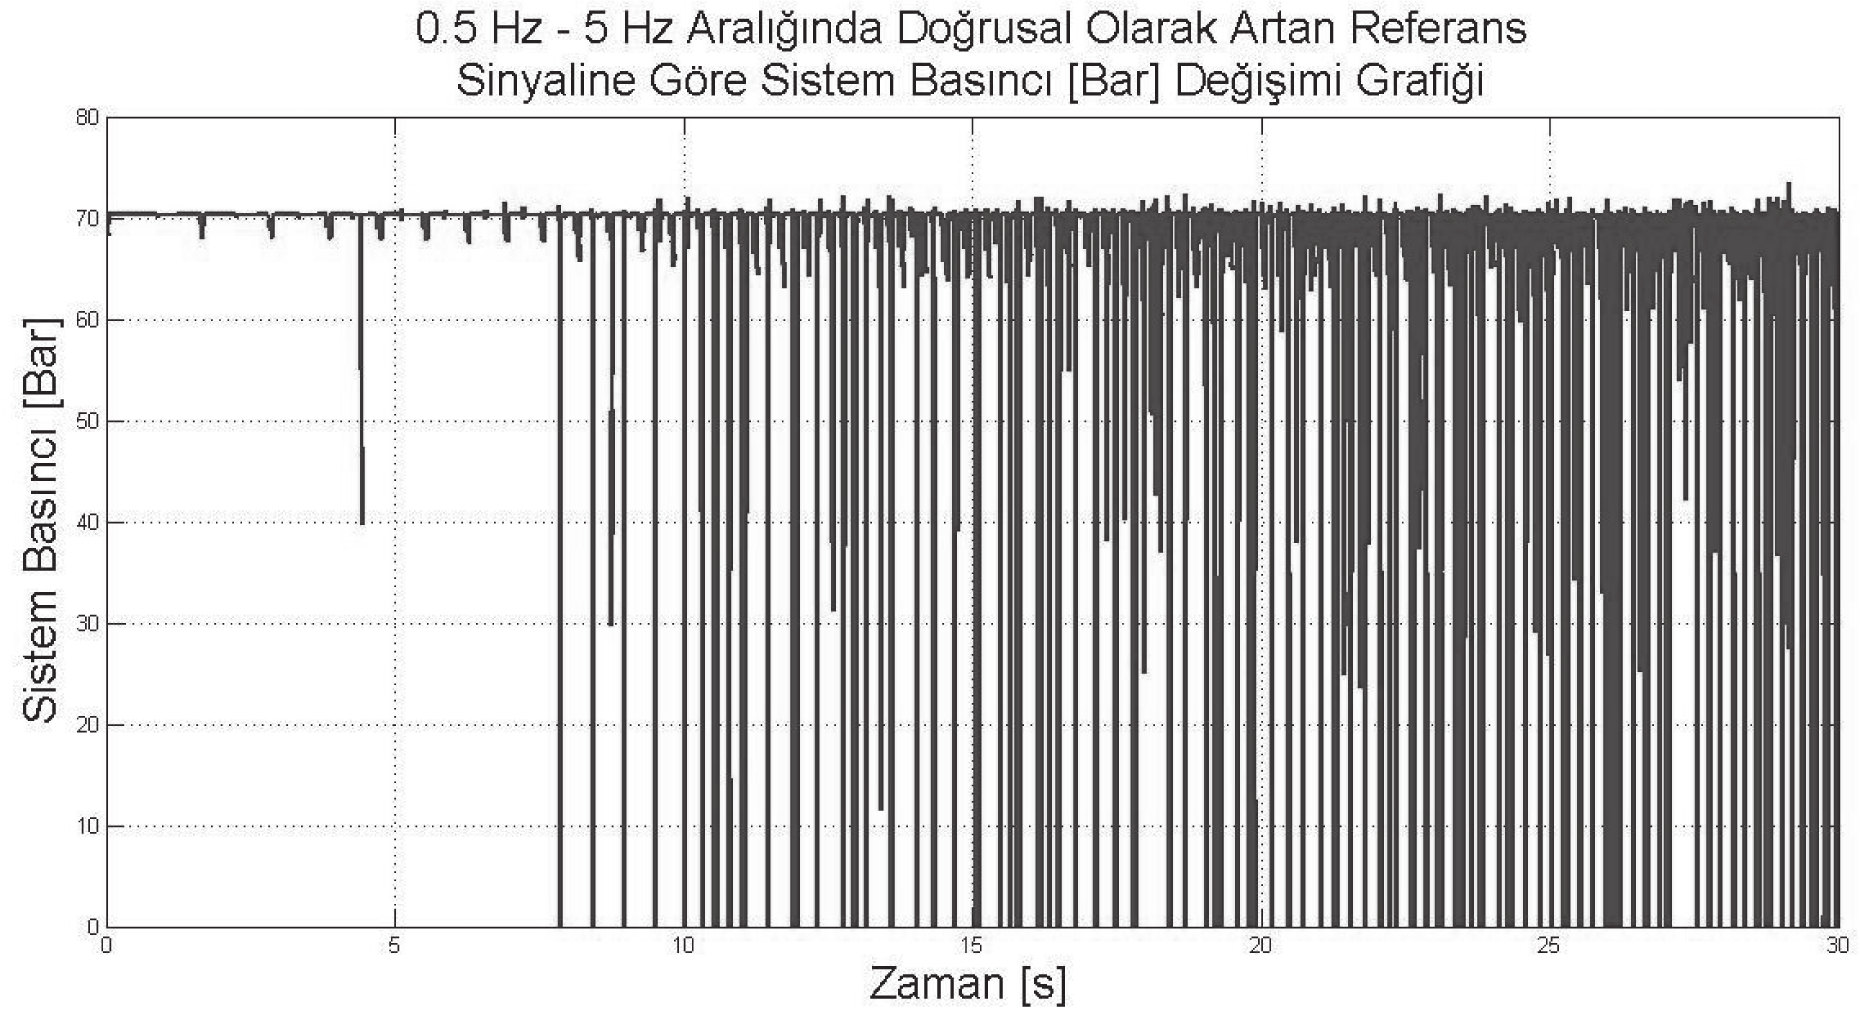 Şekil 9. 0.5 Hz - 5 Hz Aralığında Doğrusal Olarak Artan Referans Sinyaline Göre Sisteme Sağlanan Debi [lt/dak] Değişimi Grafiği 3.